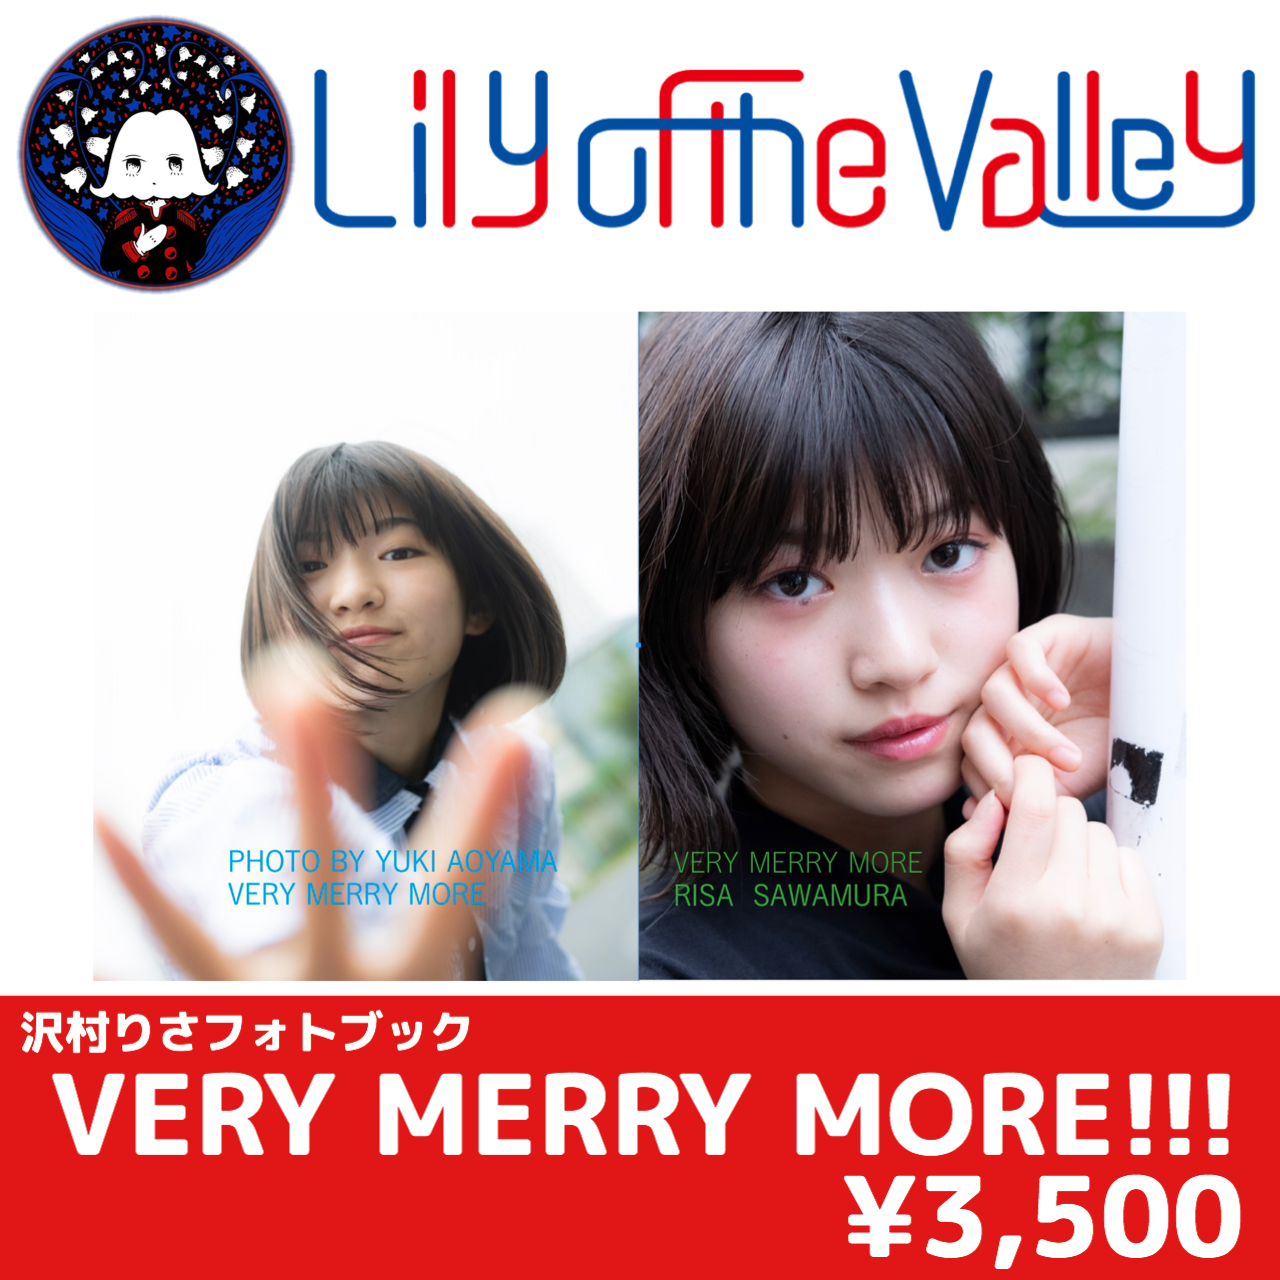 沢村りさフォトブック Very Merry More Lily Of The Valley Online Shop